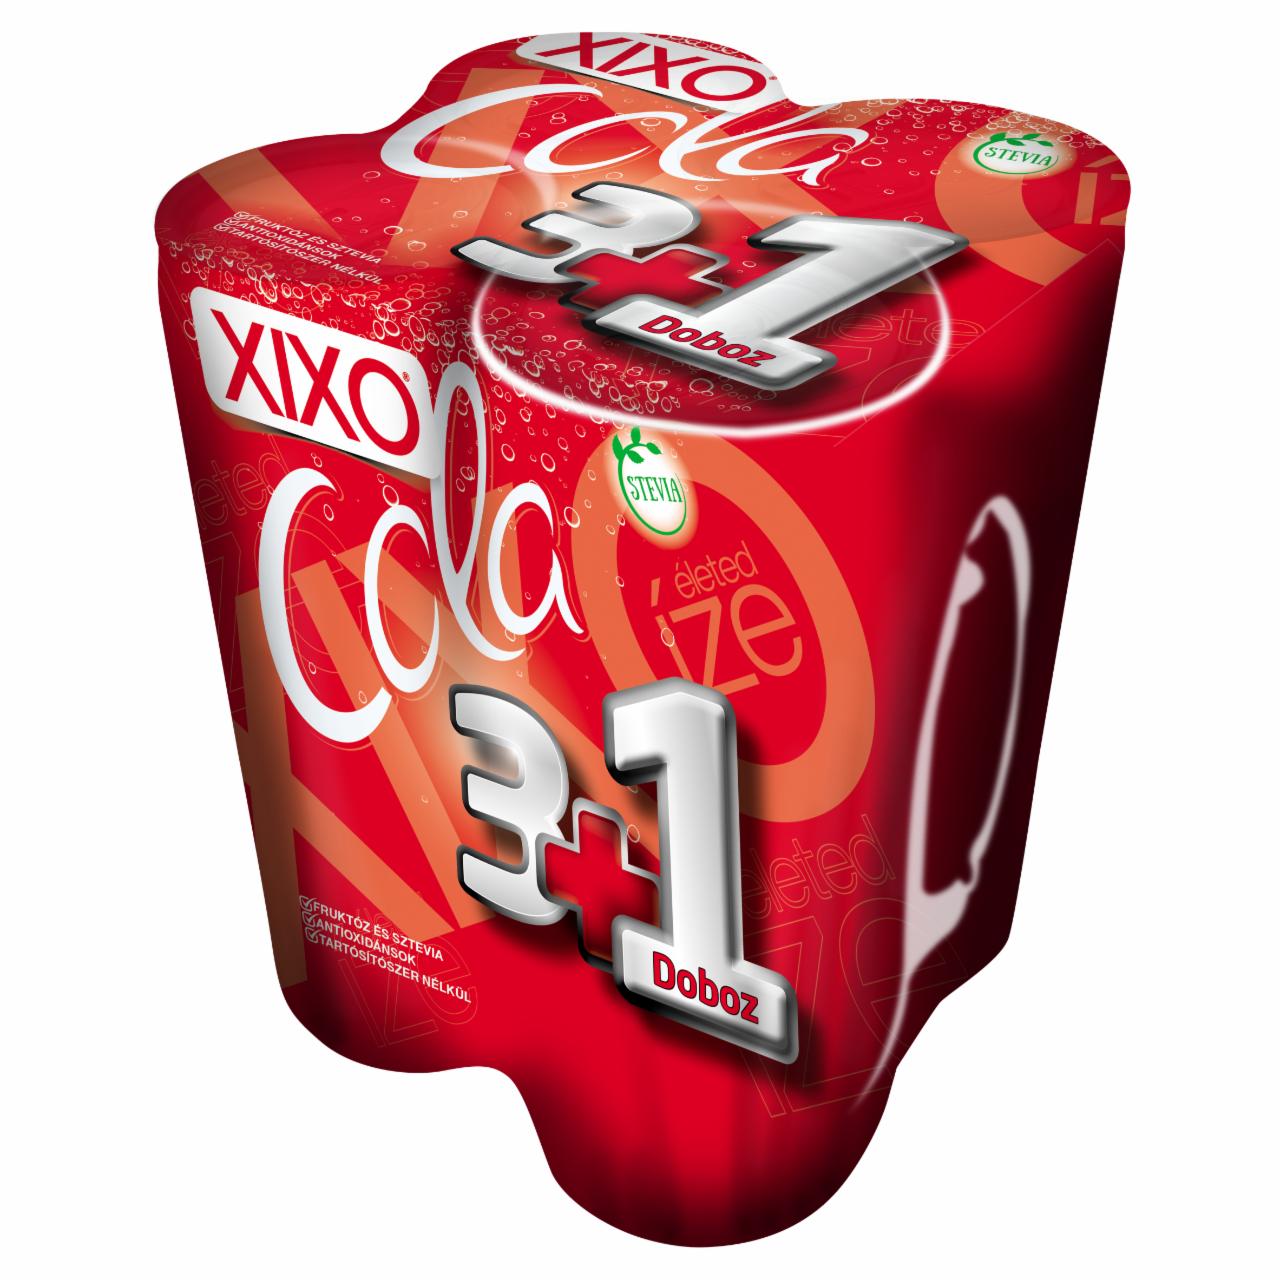 Képek - XIXO Cola kólaízű, csökkentett energia- és cukortartalmú szénsavas üdítőital 4 x 250 ml